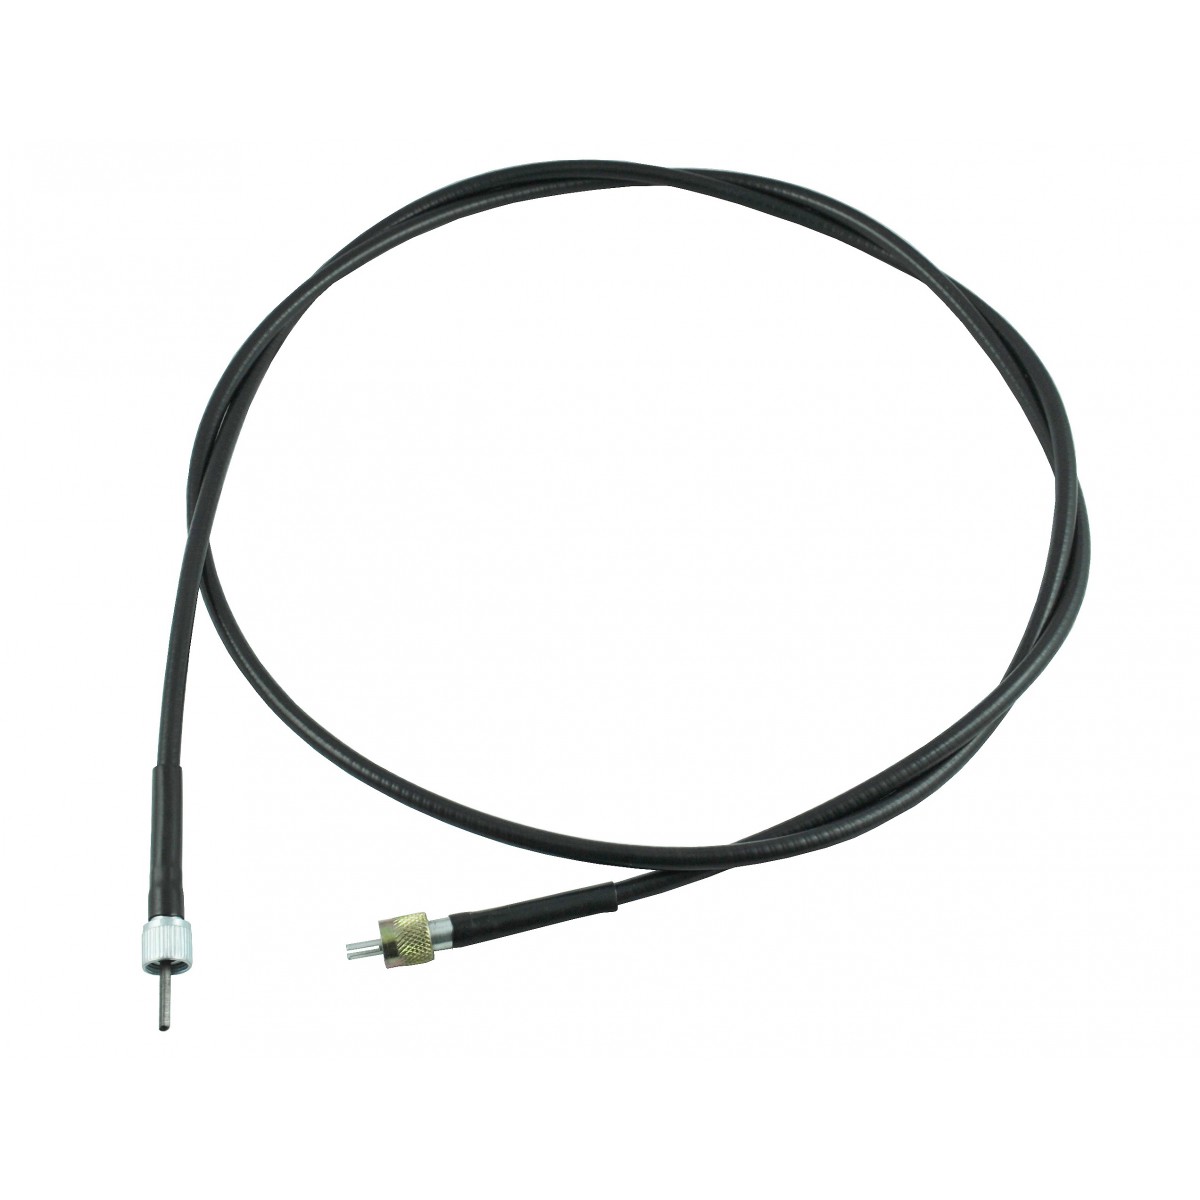 Cable cuentarrevoluciones L-1860 mm M12x1-M11x1 Yanmar FX335